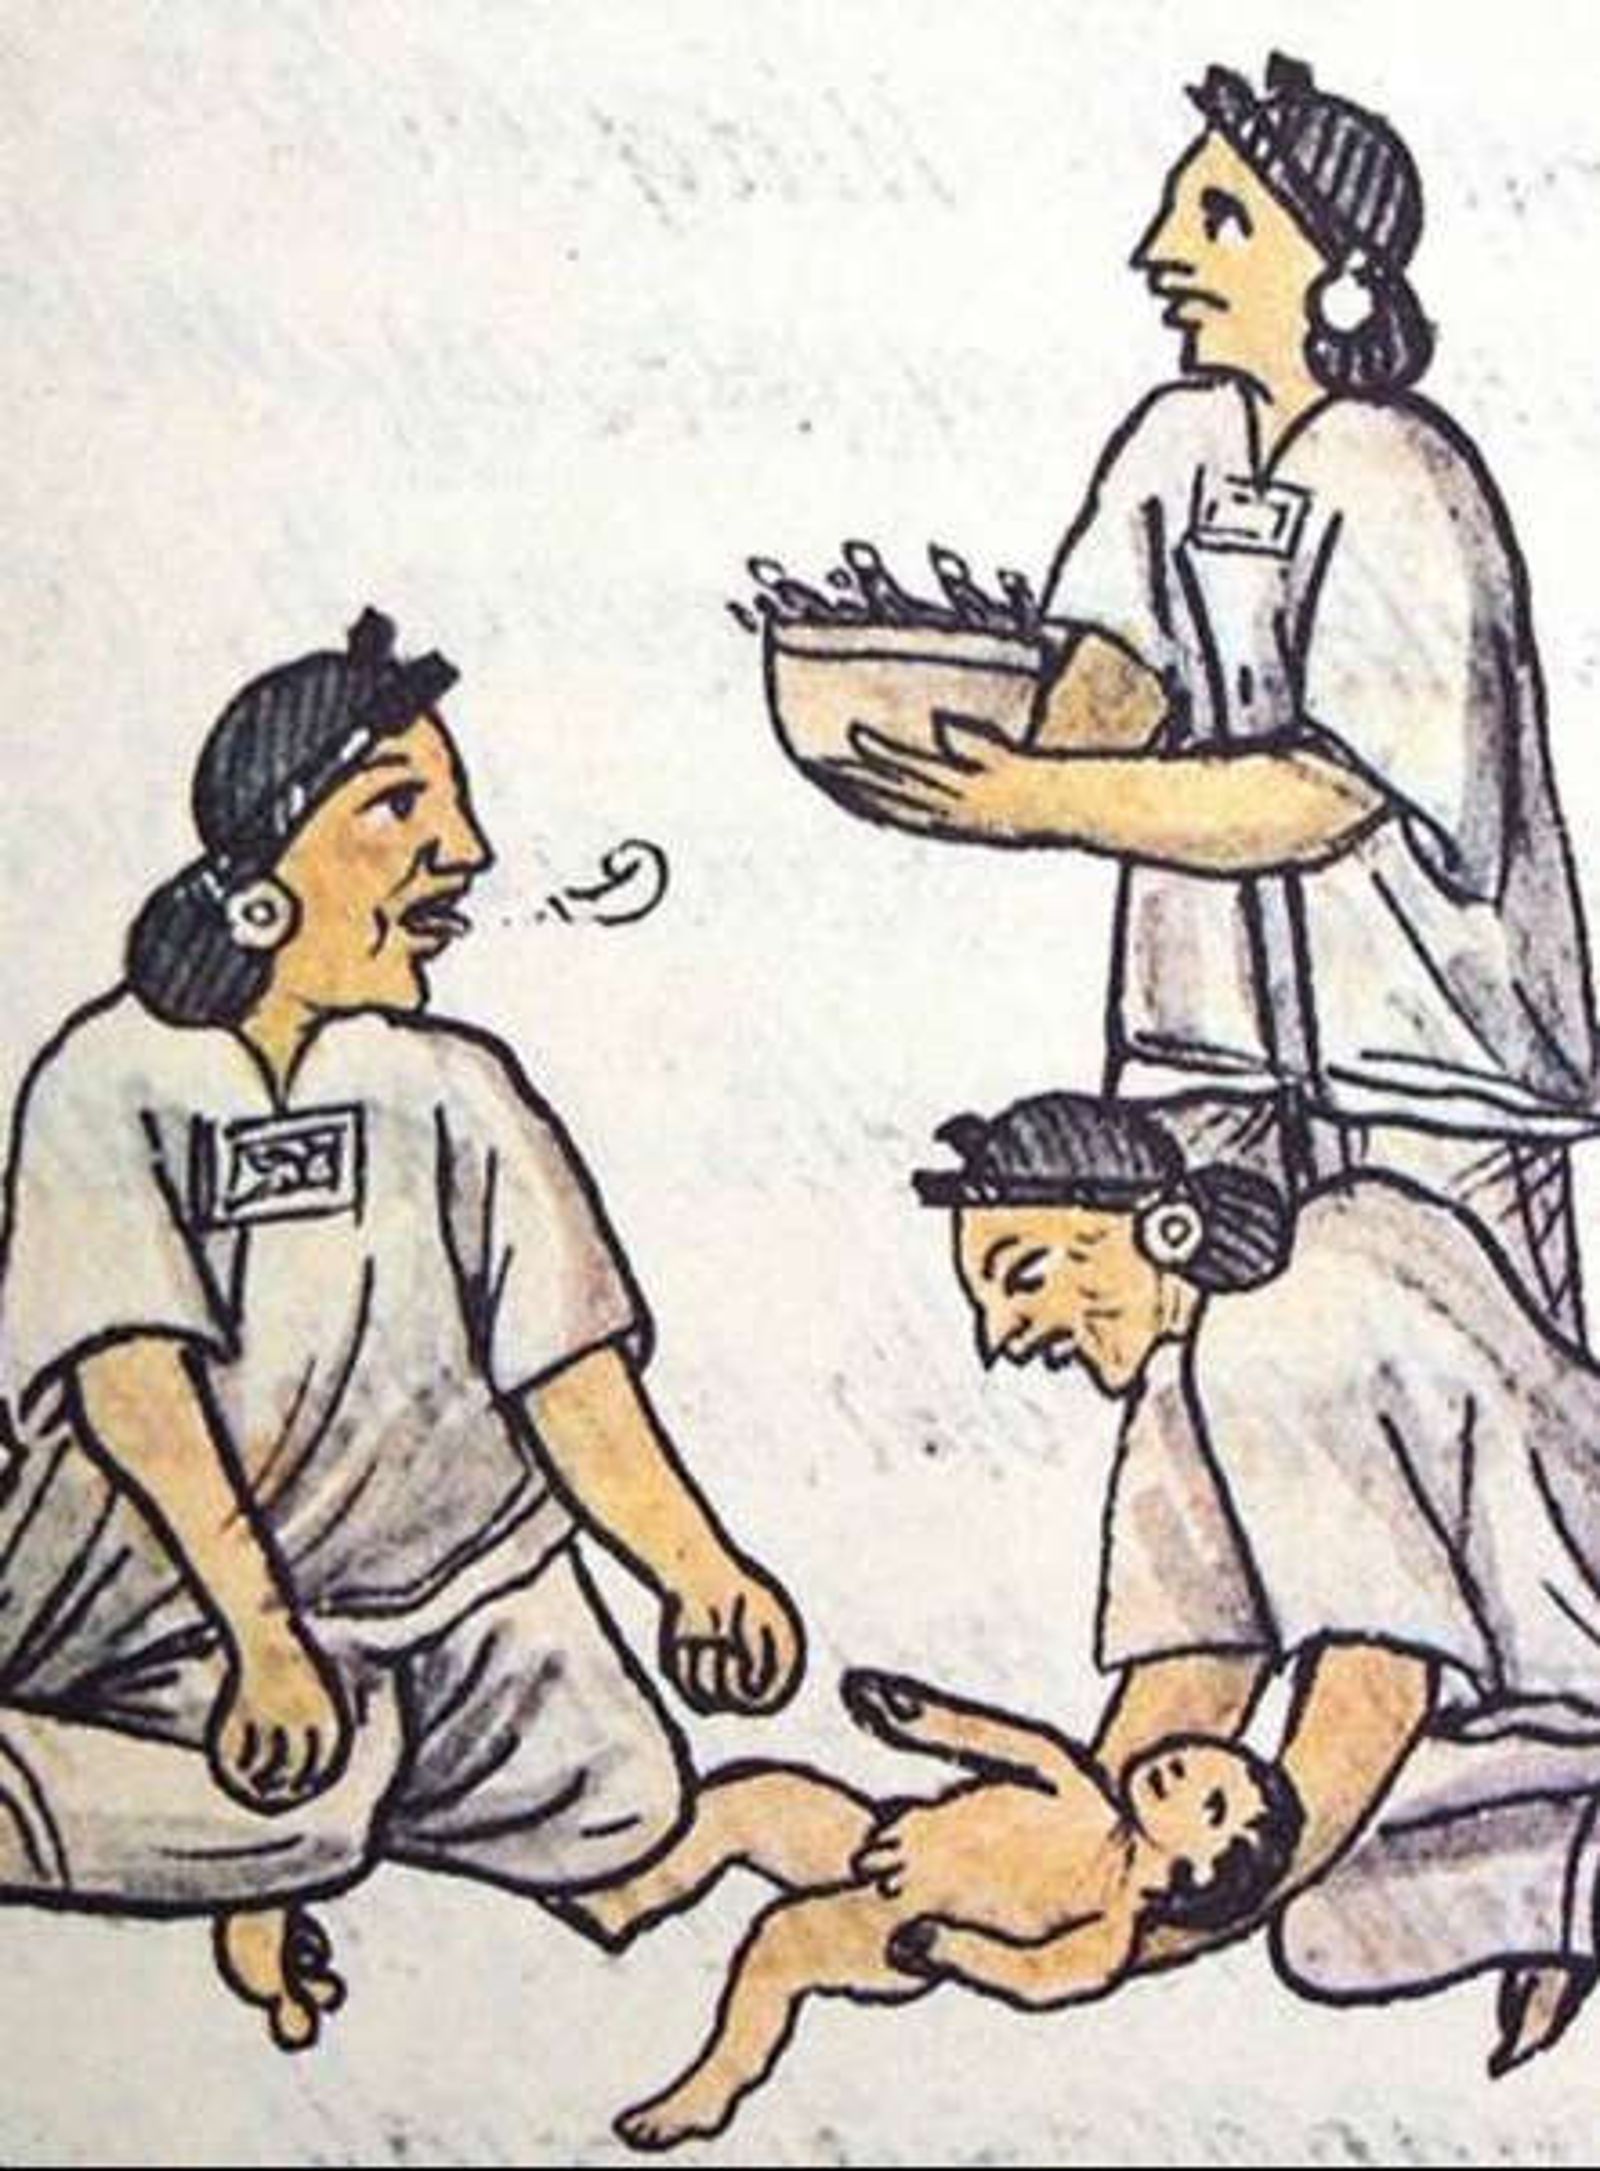  Bienvenida al recién nacido. Códice Florentino, lib. IV, f. 19r.